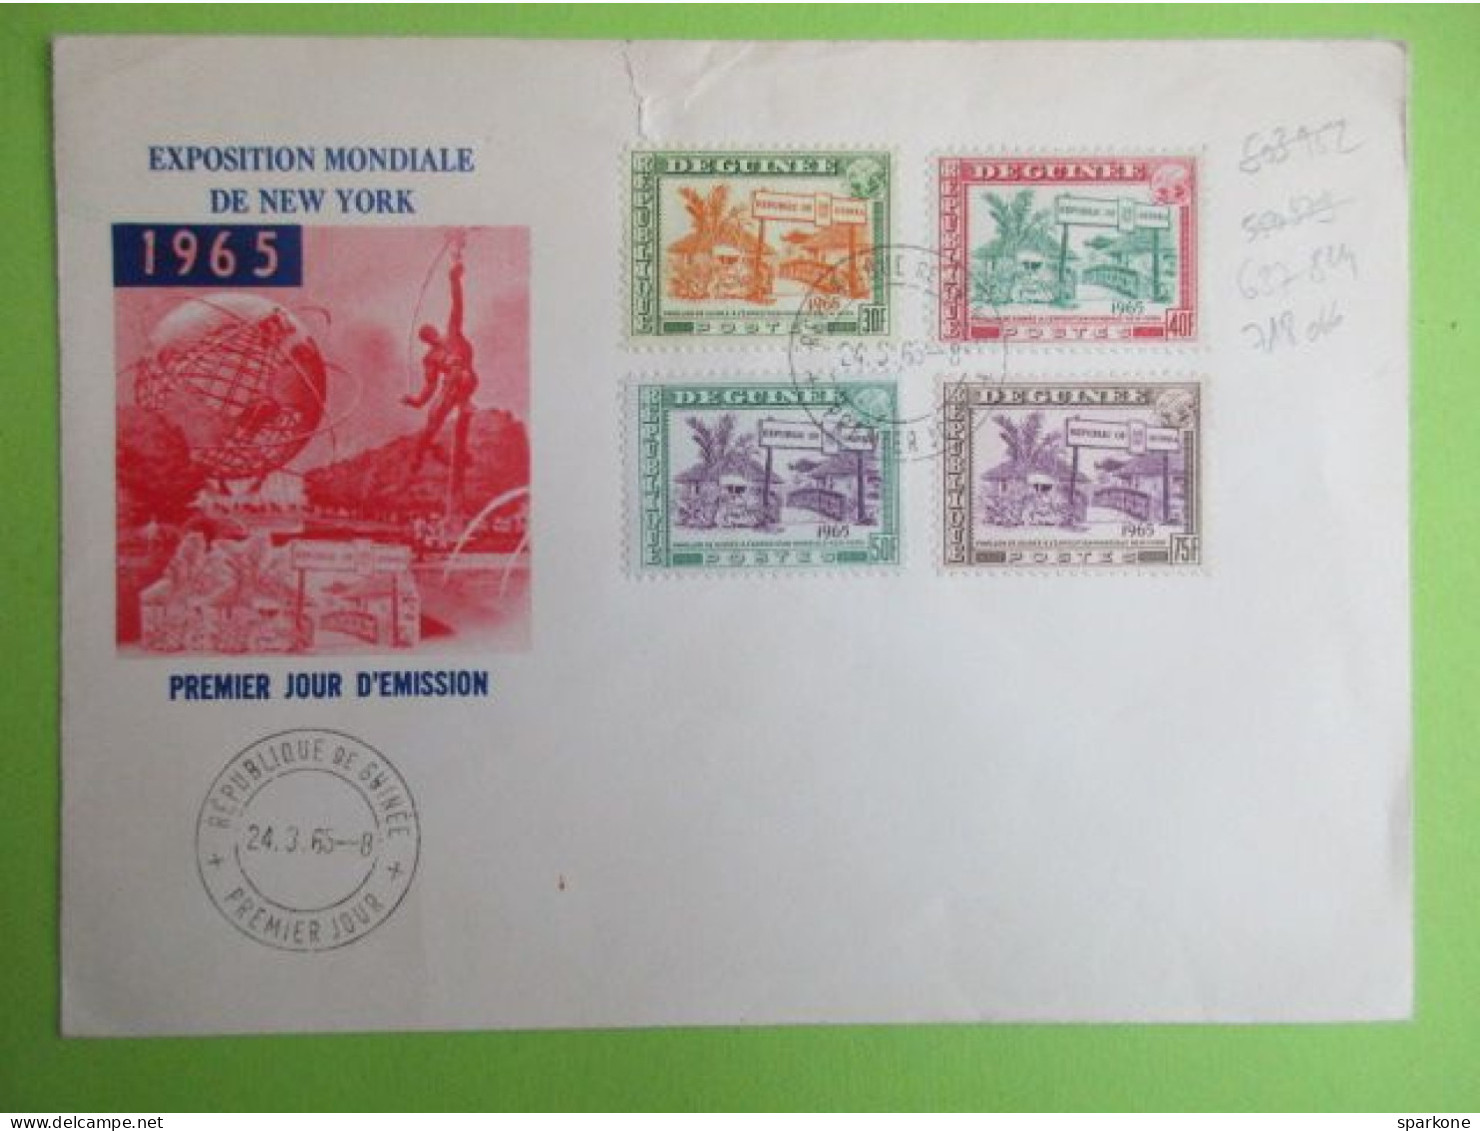 Marcophilie - Enveloppes De 1965 - Exposition Mondial De New York - Premier Jours D'émission - Equatorial Guinea